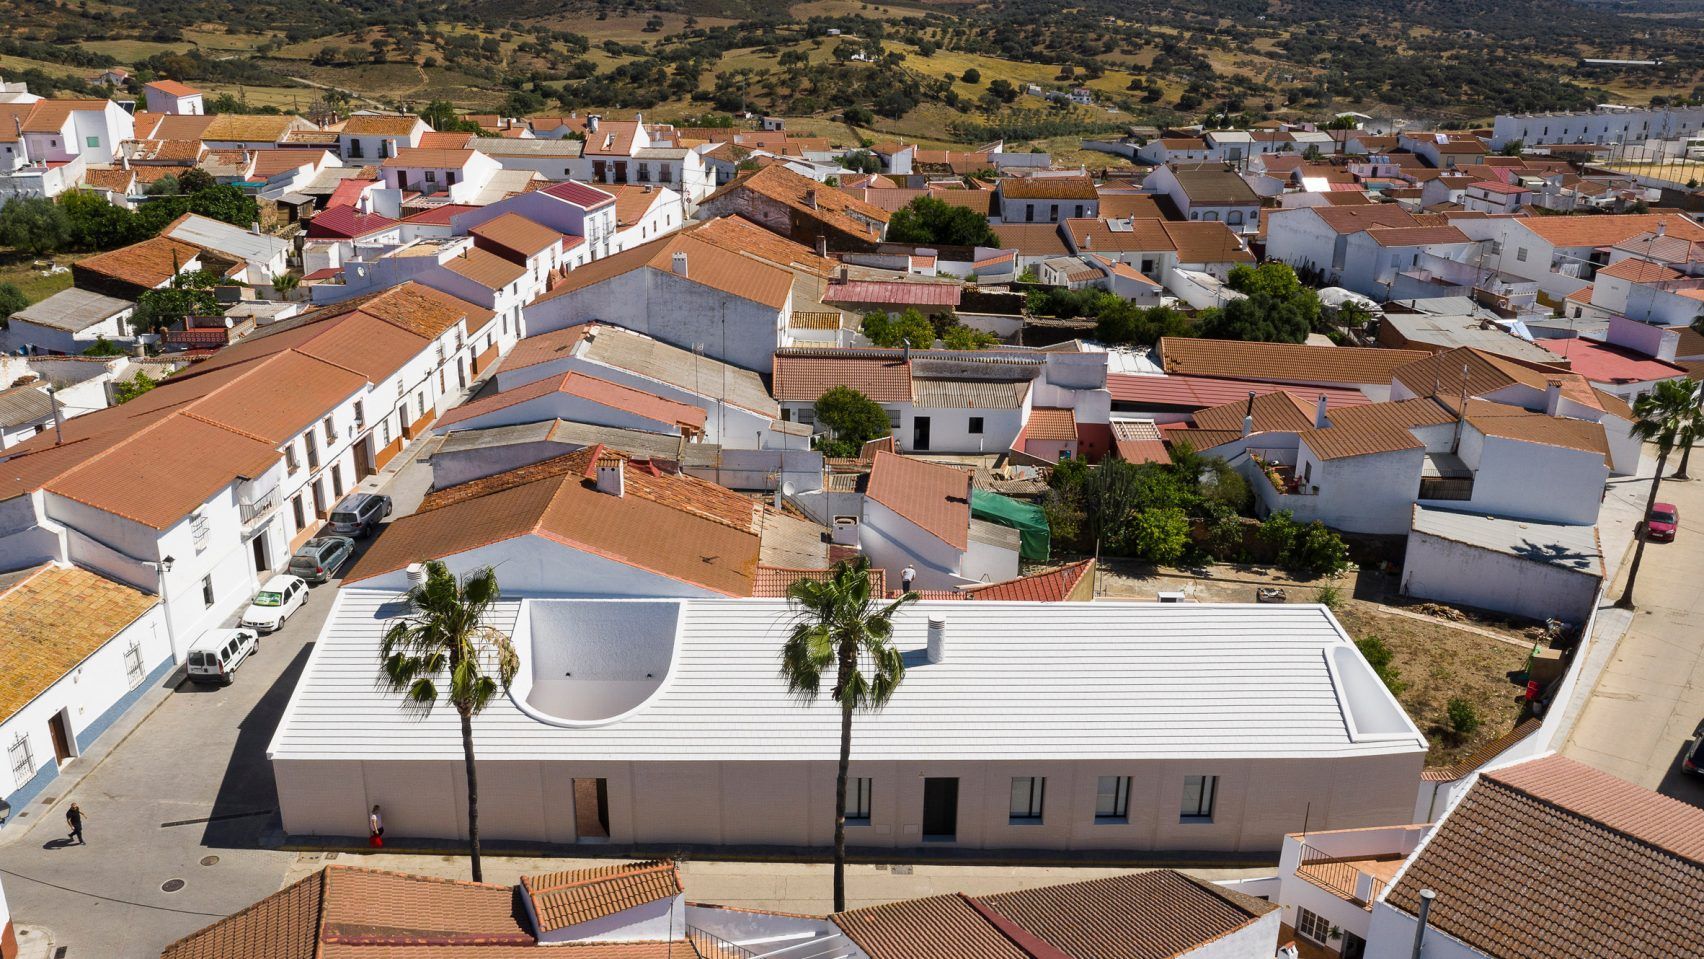 Выбивается из общей картины: особый дизайн дома в Испании